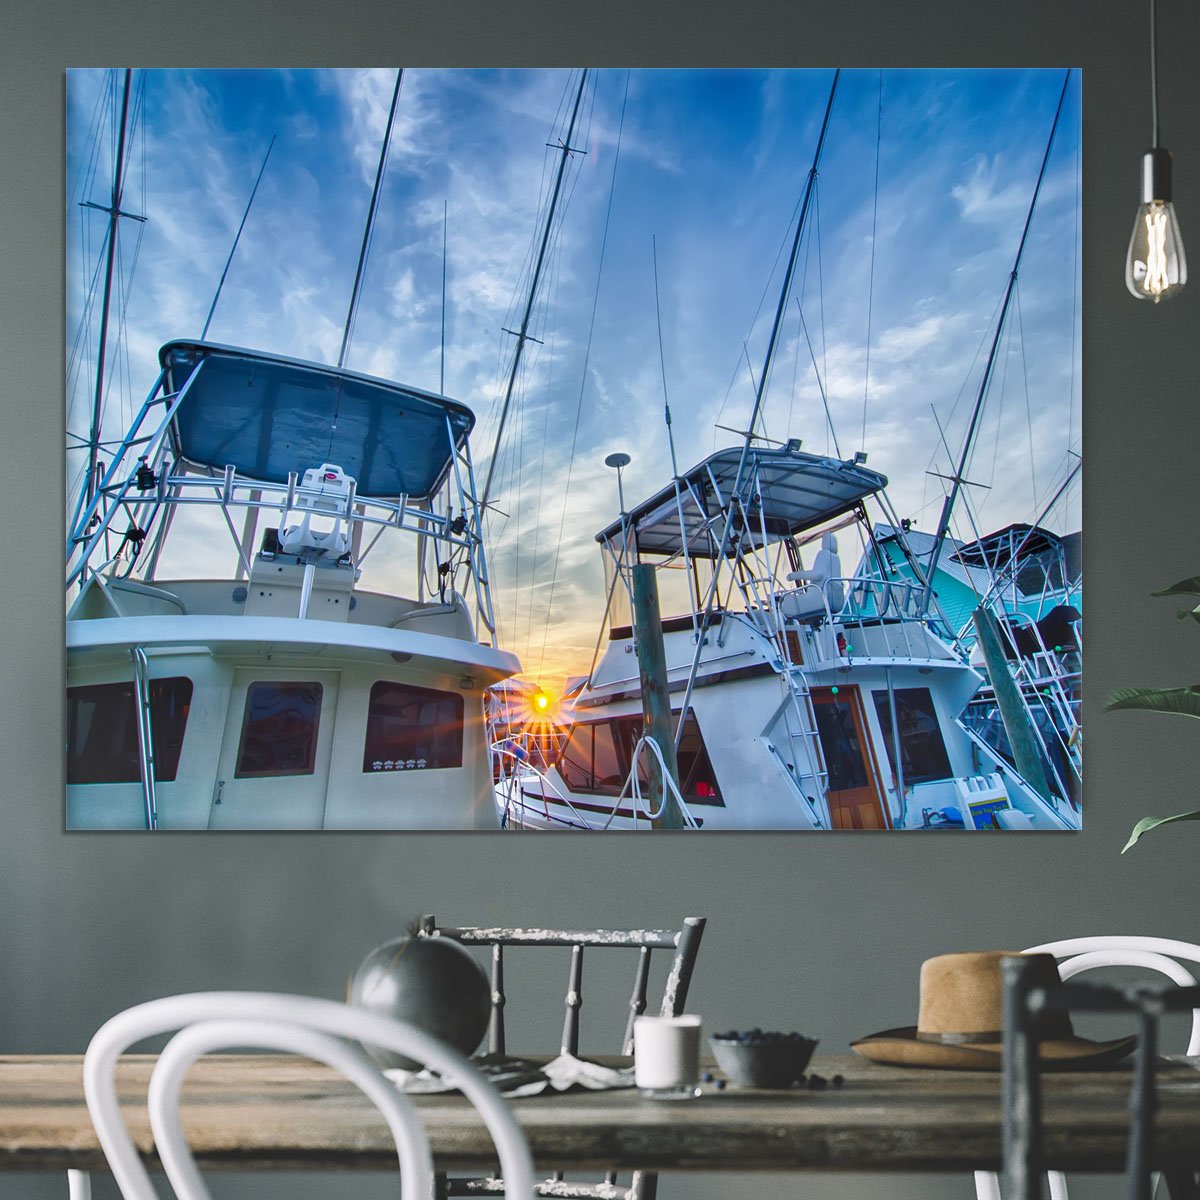 Sportfishing boats at Marina early morning Canvas Print or Poster